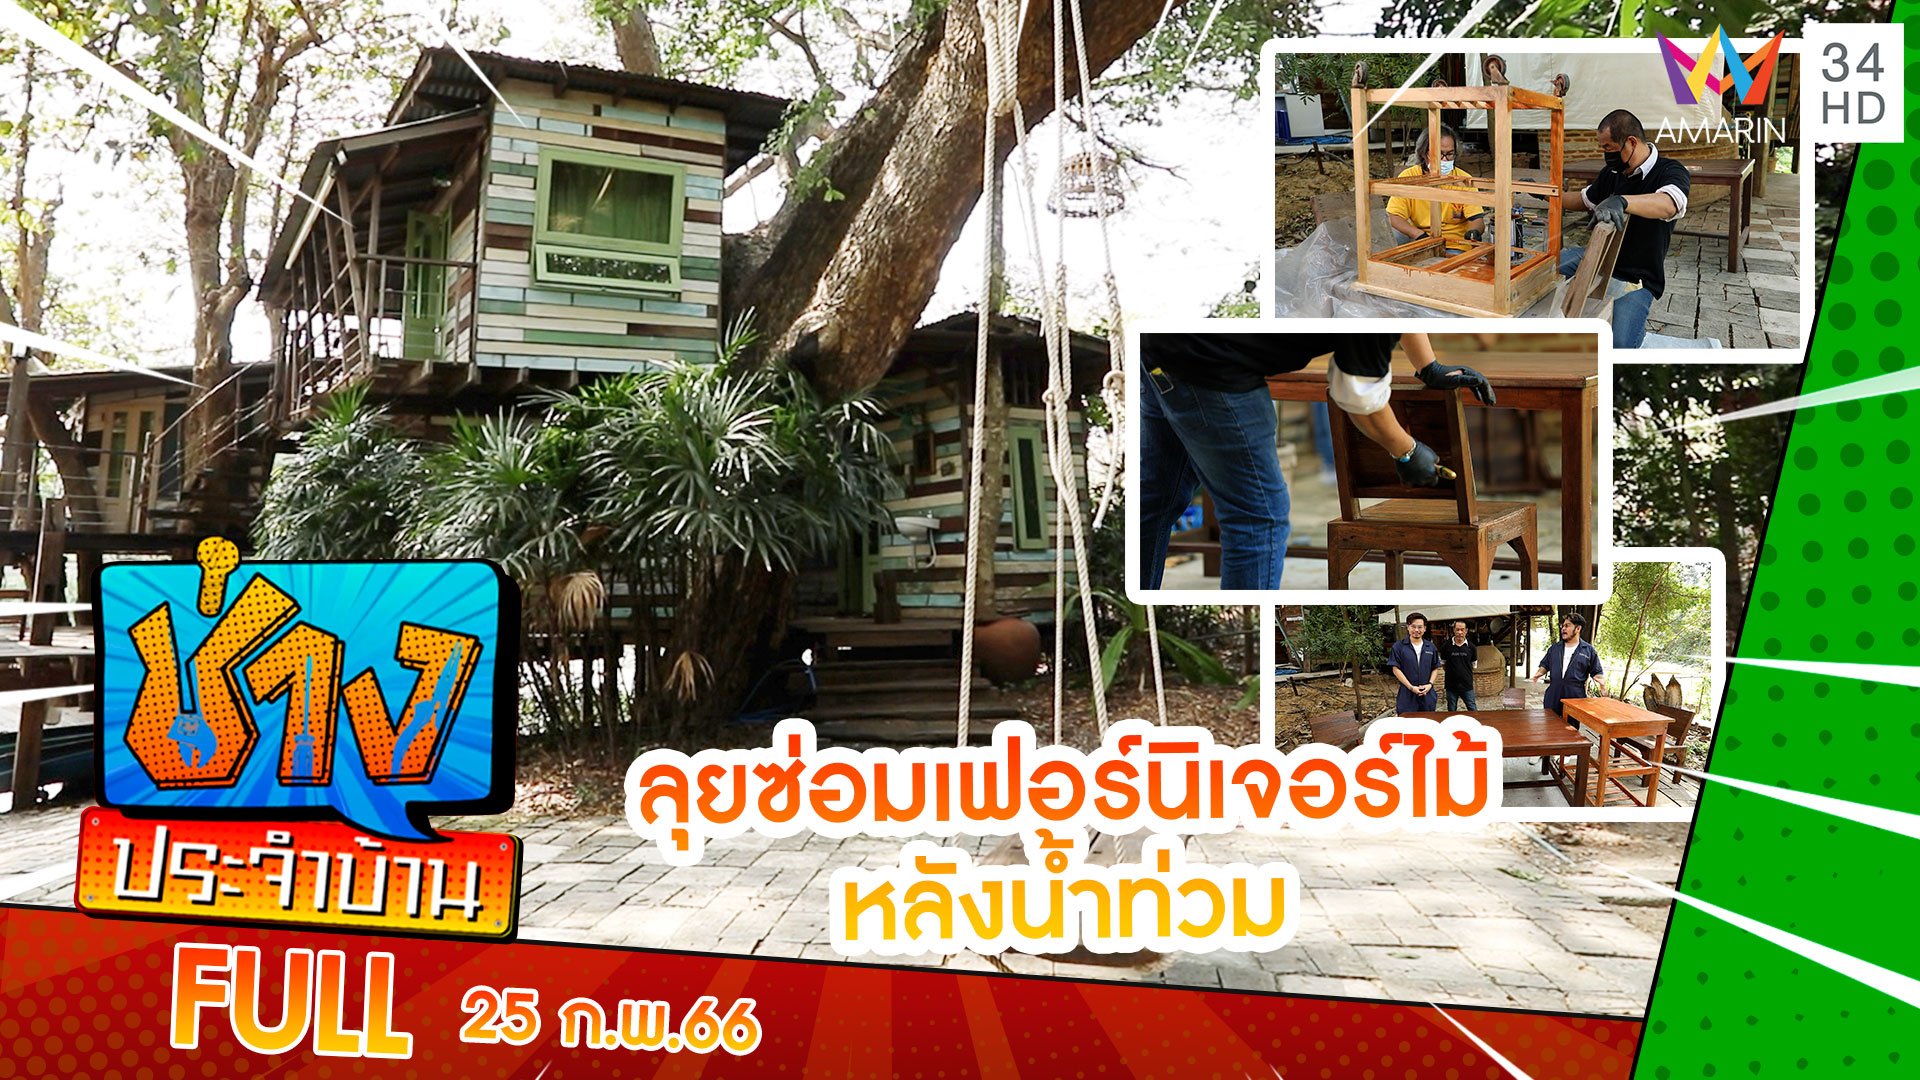 เยือน 'บ้านต้นไม้' ลุยซ่อมเฟอร์นิเจอร์ไม้หลังน้ำท่วม | ช่างประจำบ้าน | 25 ก.พ. 66 | AMARIN TVHD34